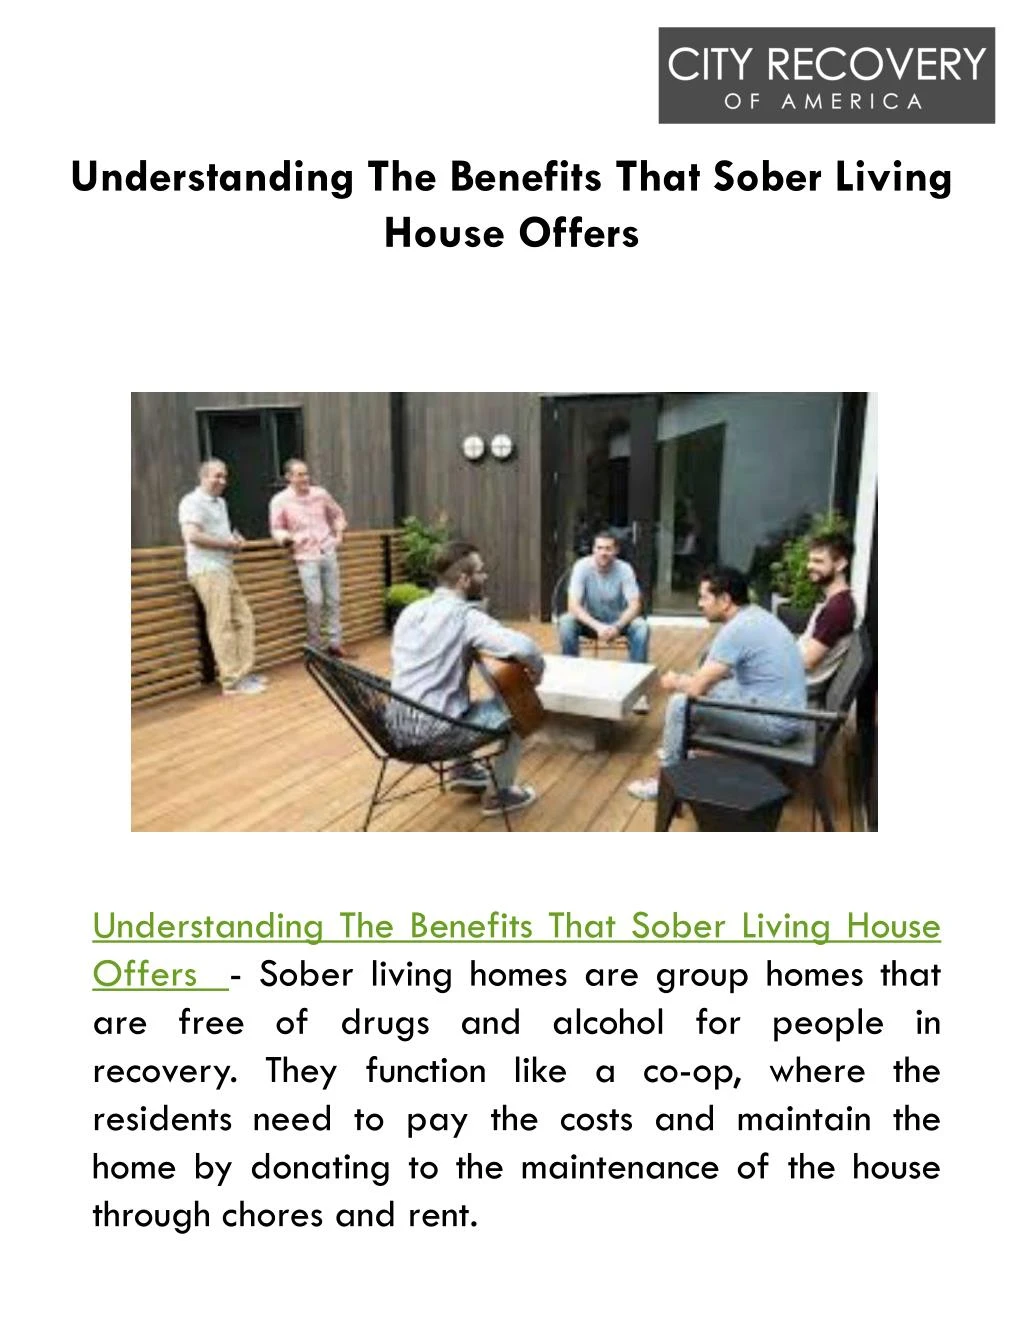 understanding the benefits that sober living